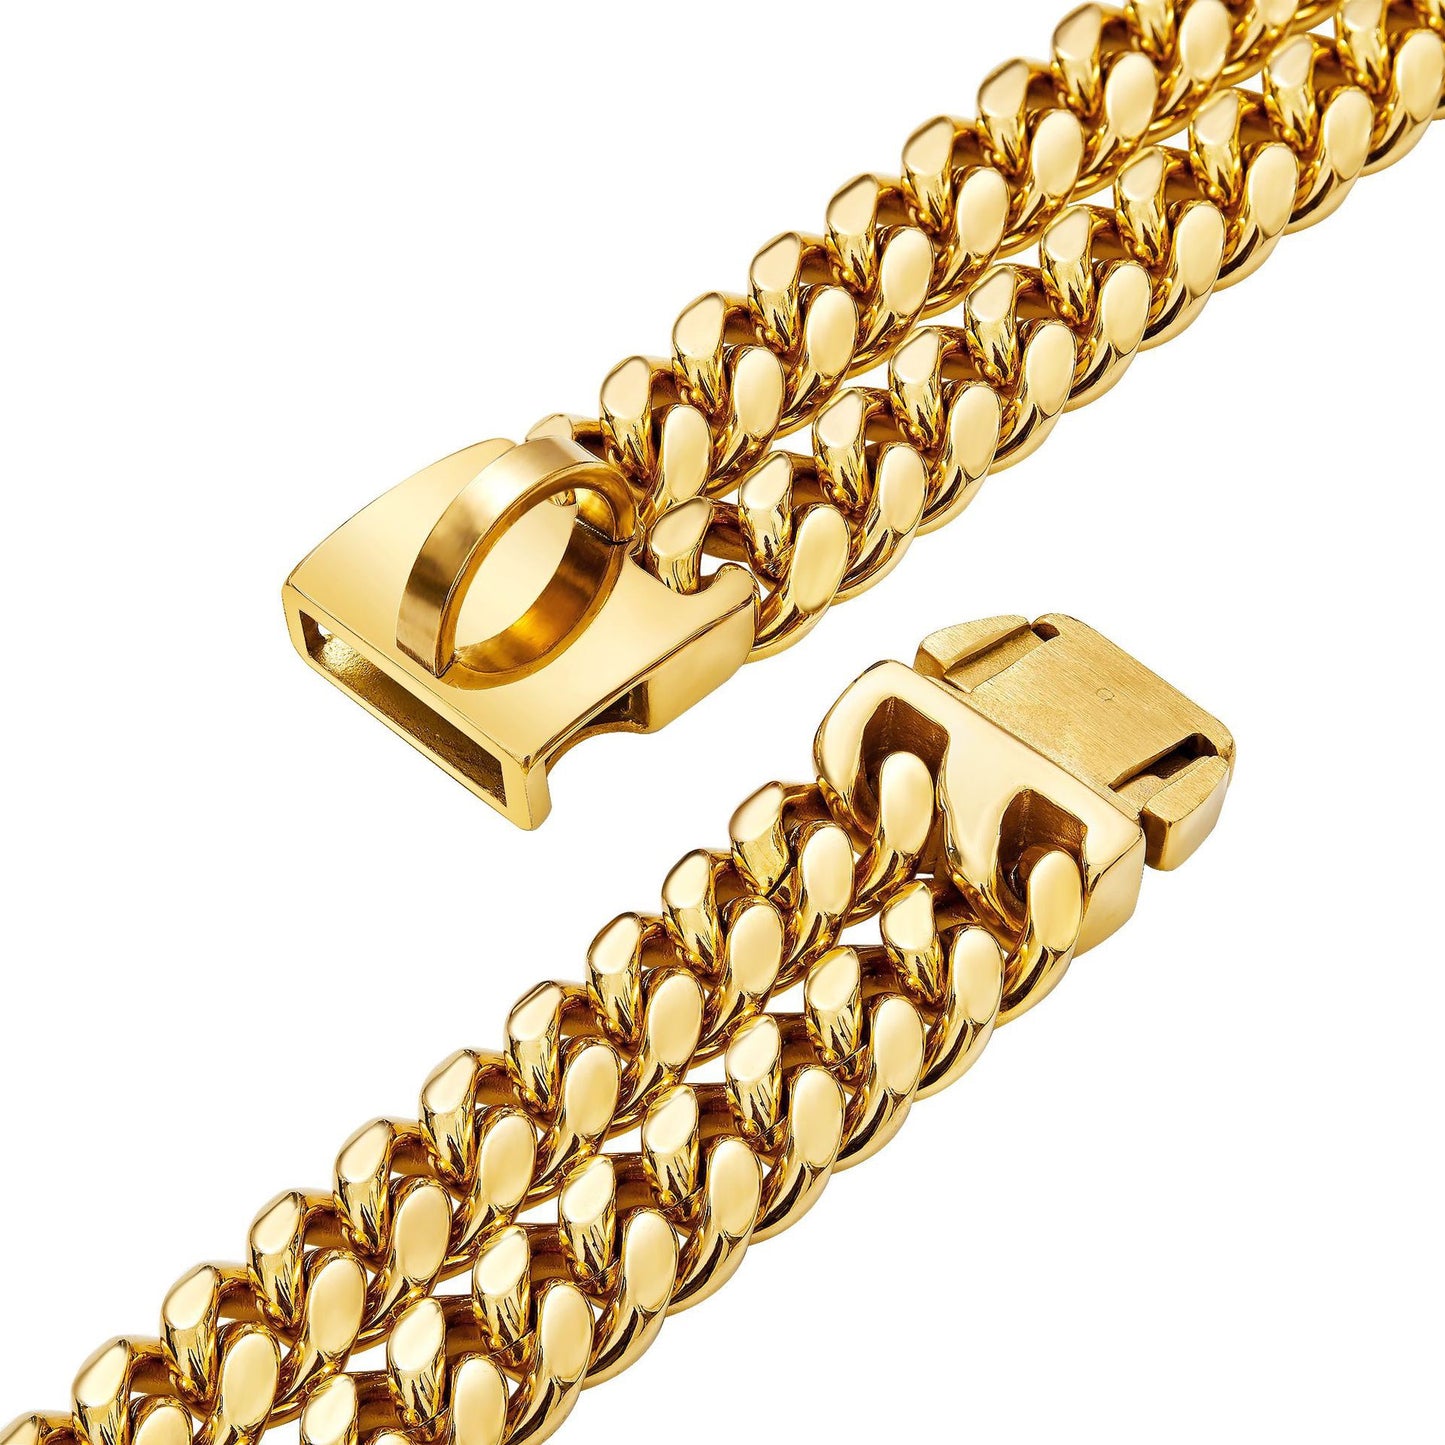 Dog Gold Chain Collar Cuba Link